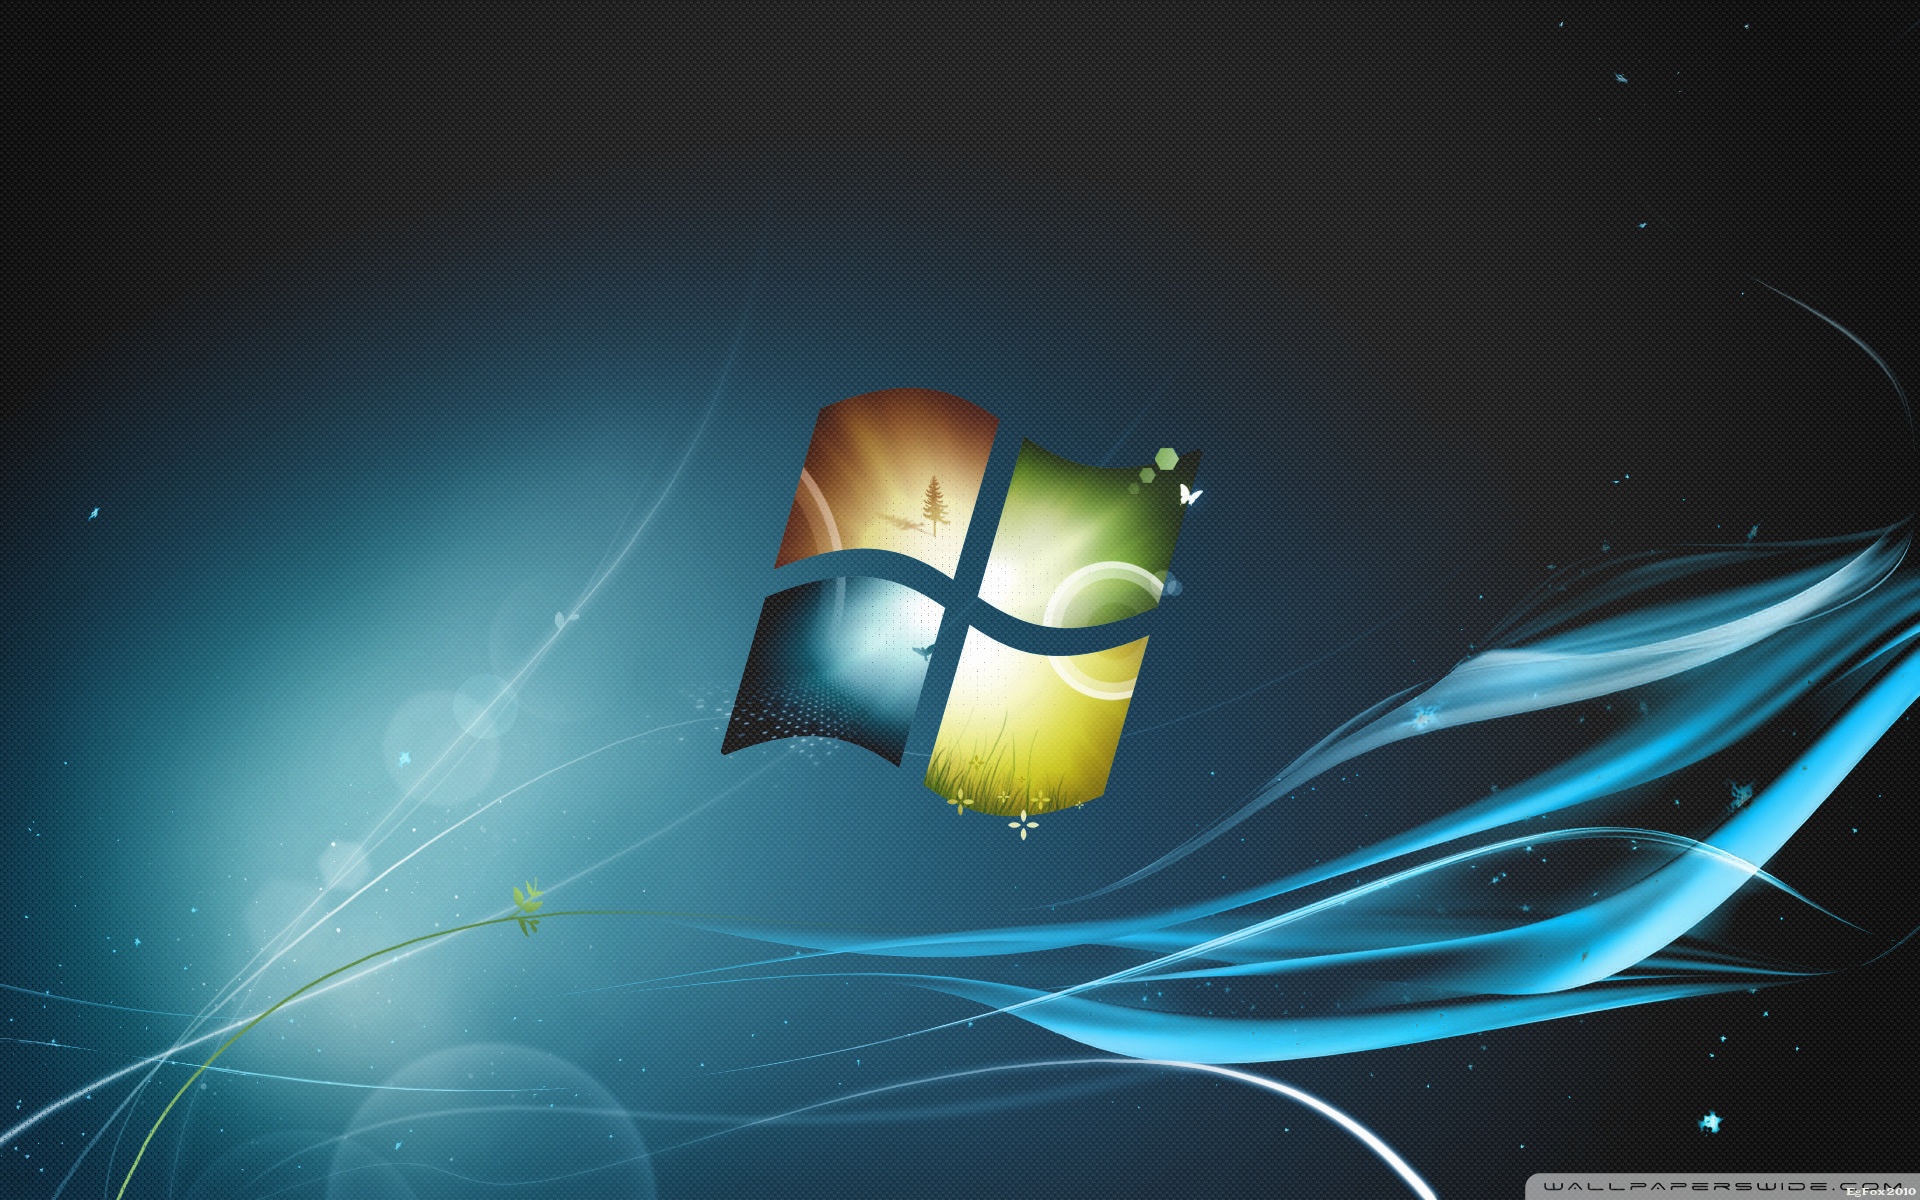 Fonds d'écran Windows 7 : tous les wallpapers Windows 7